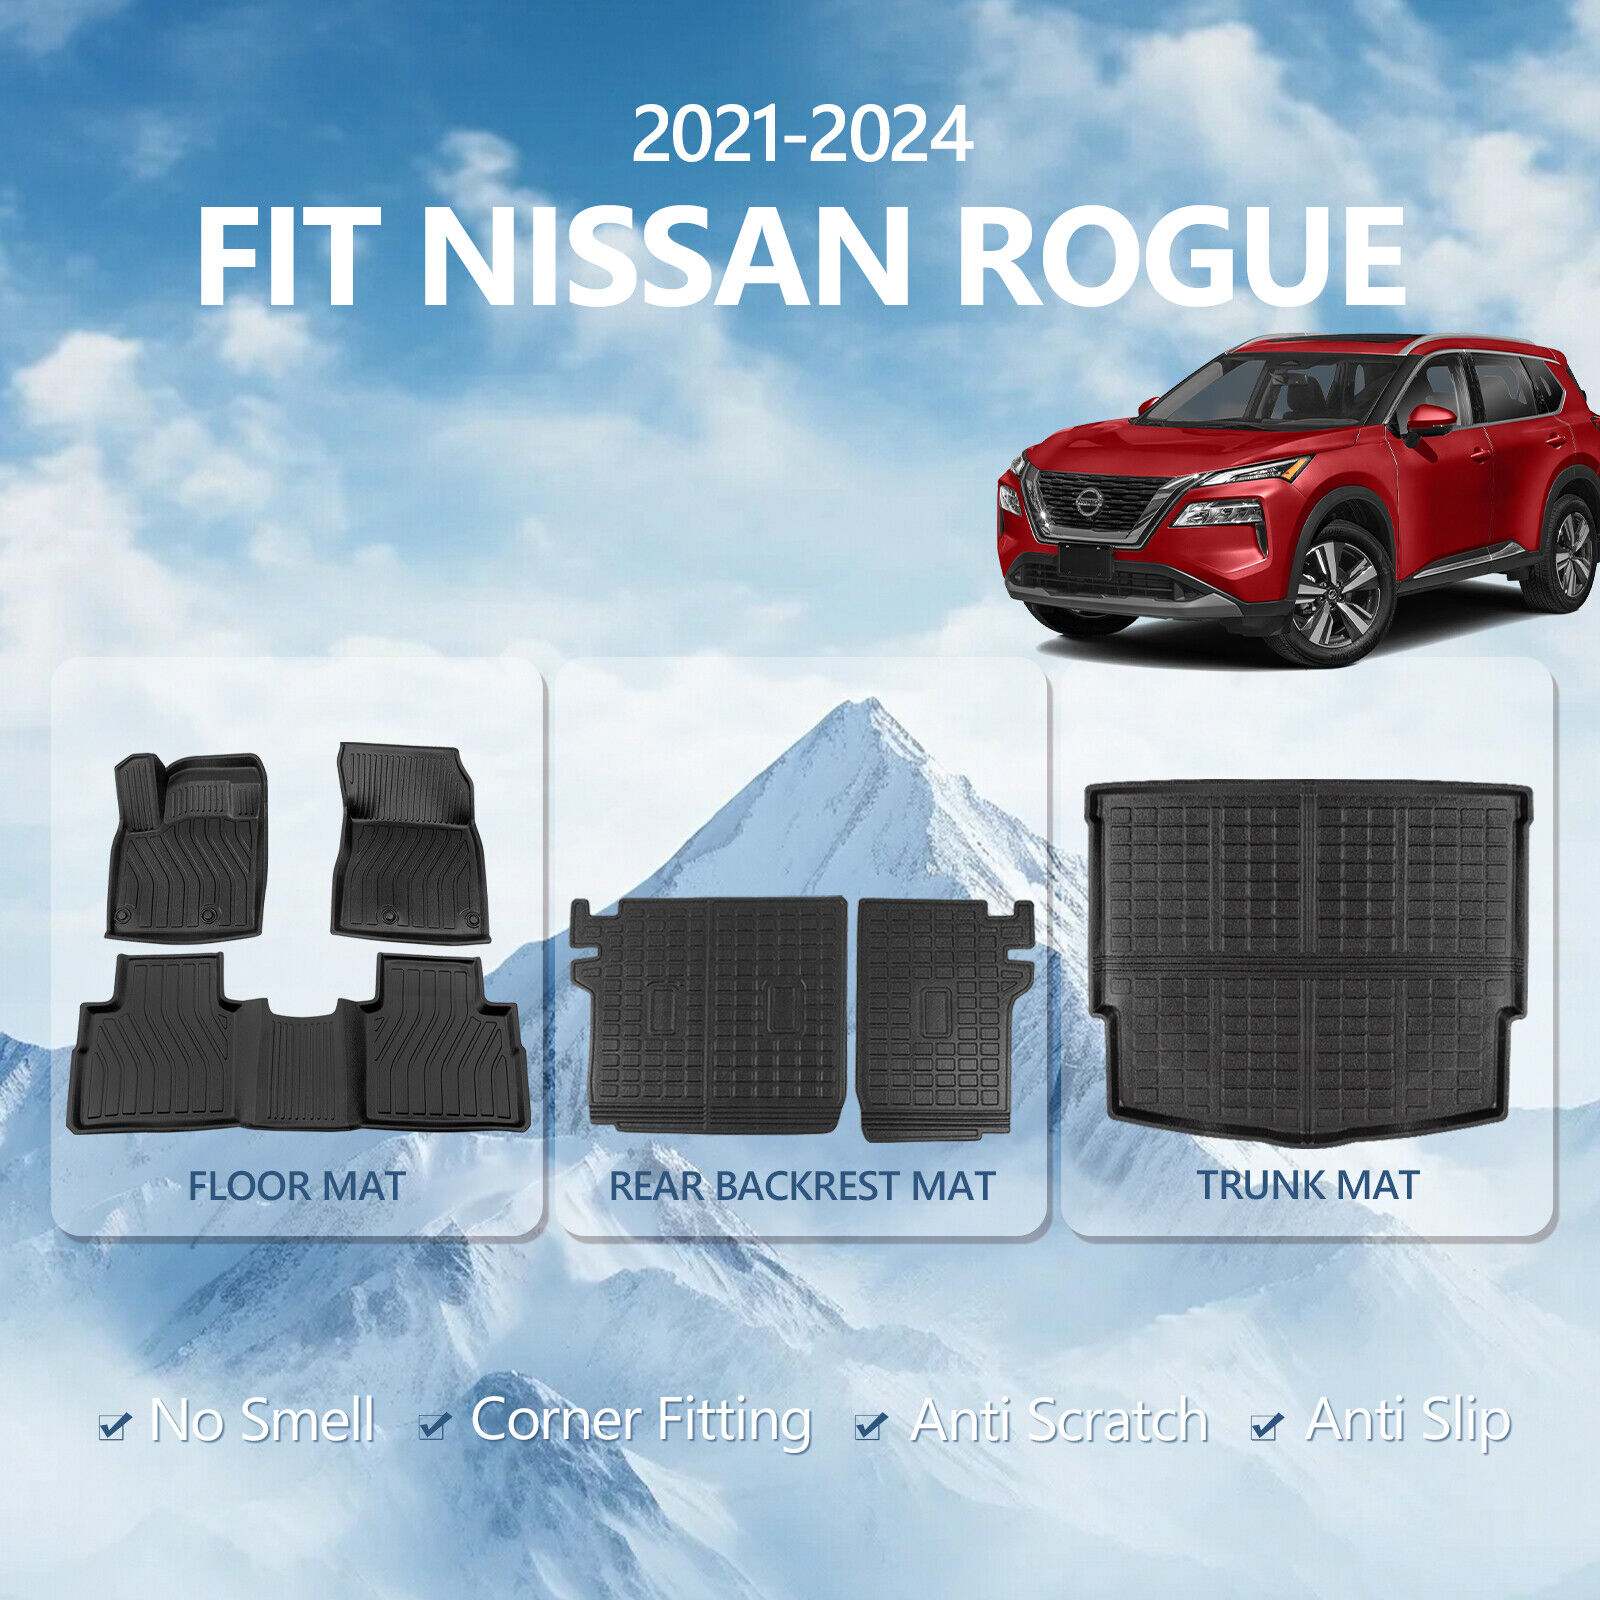 Fit 2021-2024 Nissan Rogue Cargo Mats Backrest Mat Floor Mats Trunk Cargo Liners